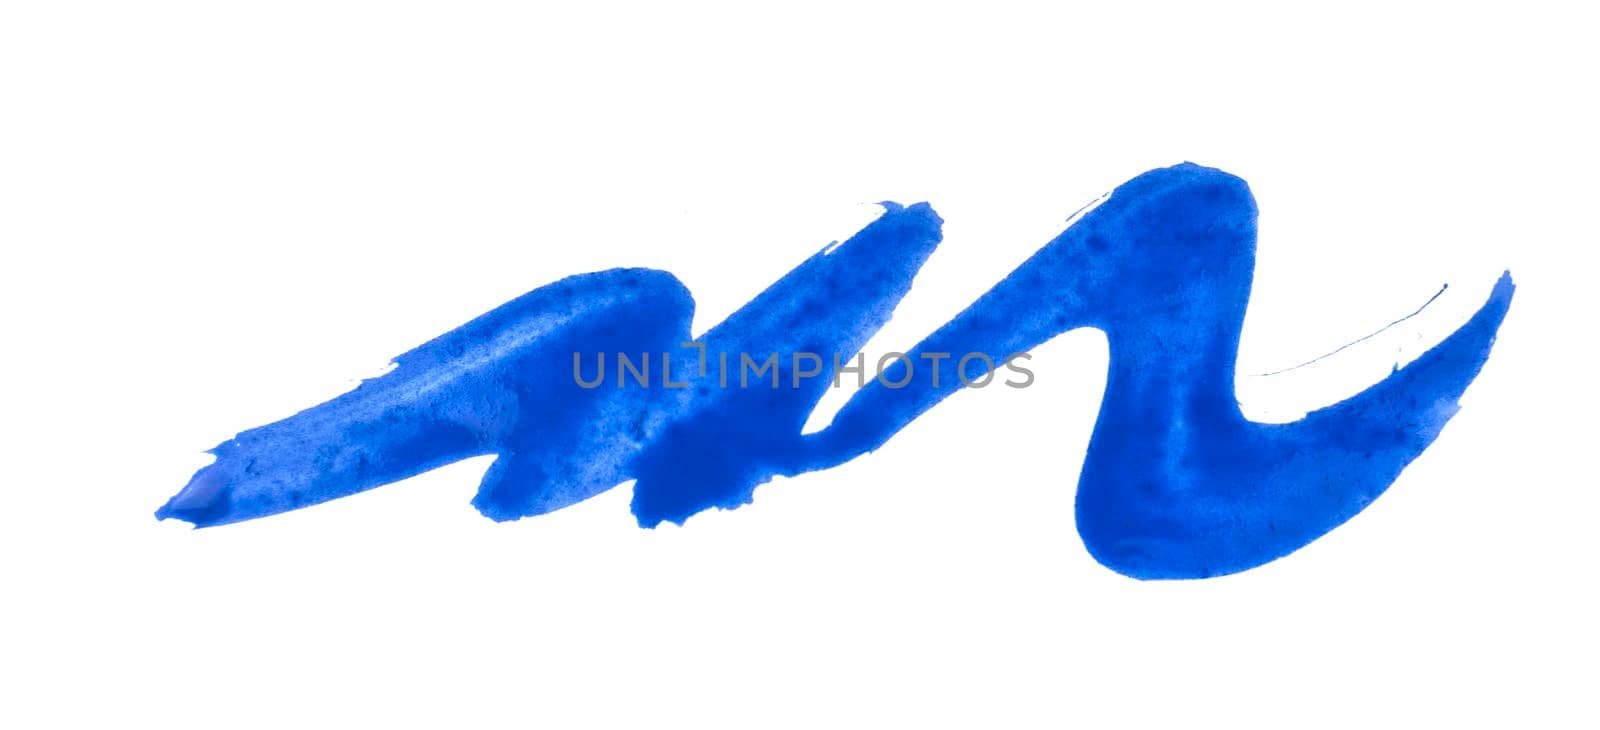 blue paint brush stroke isolated on white background